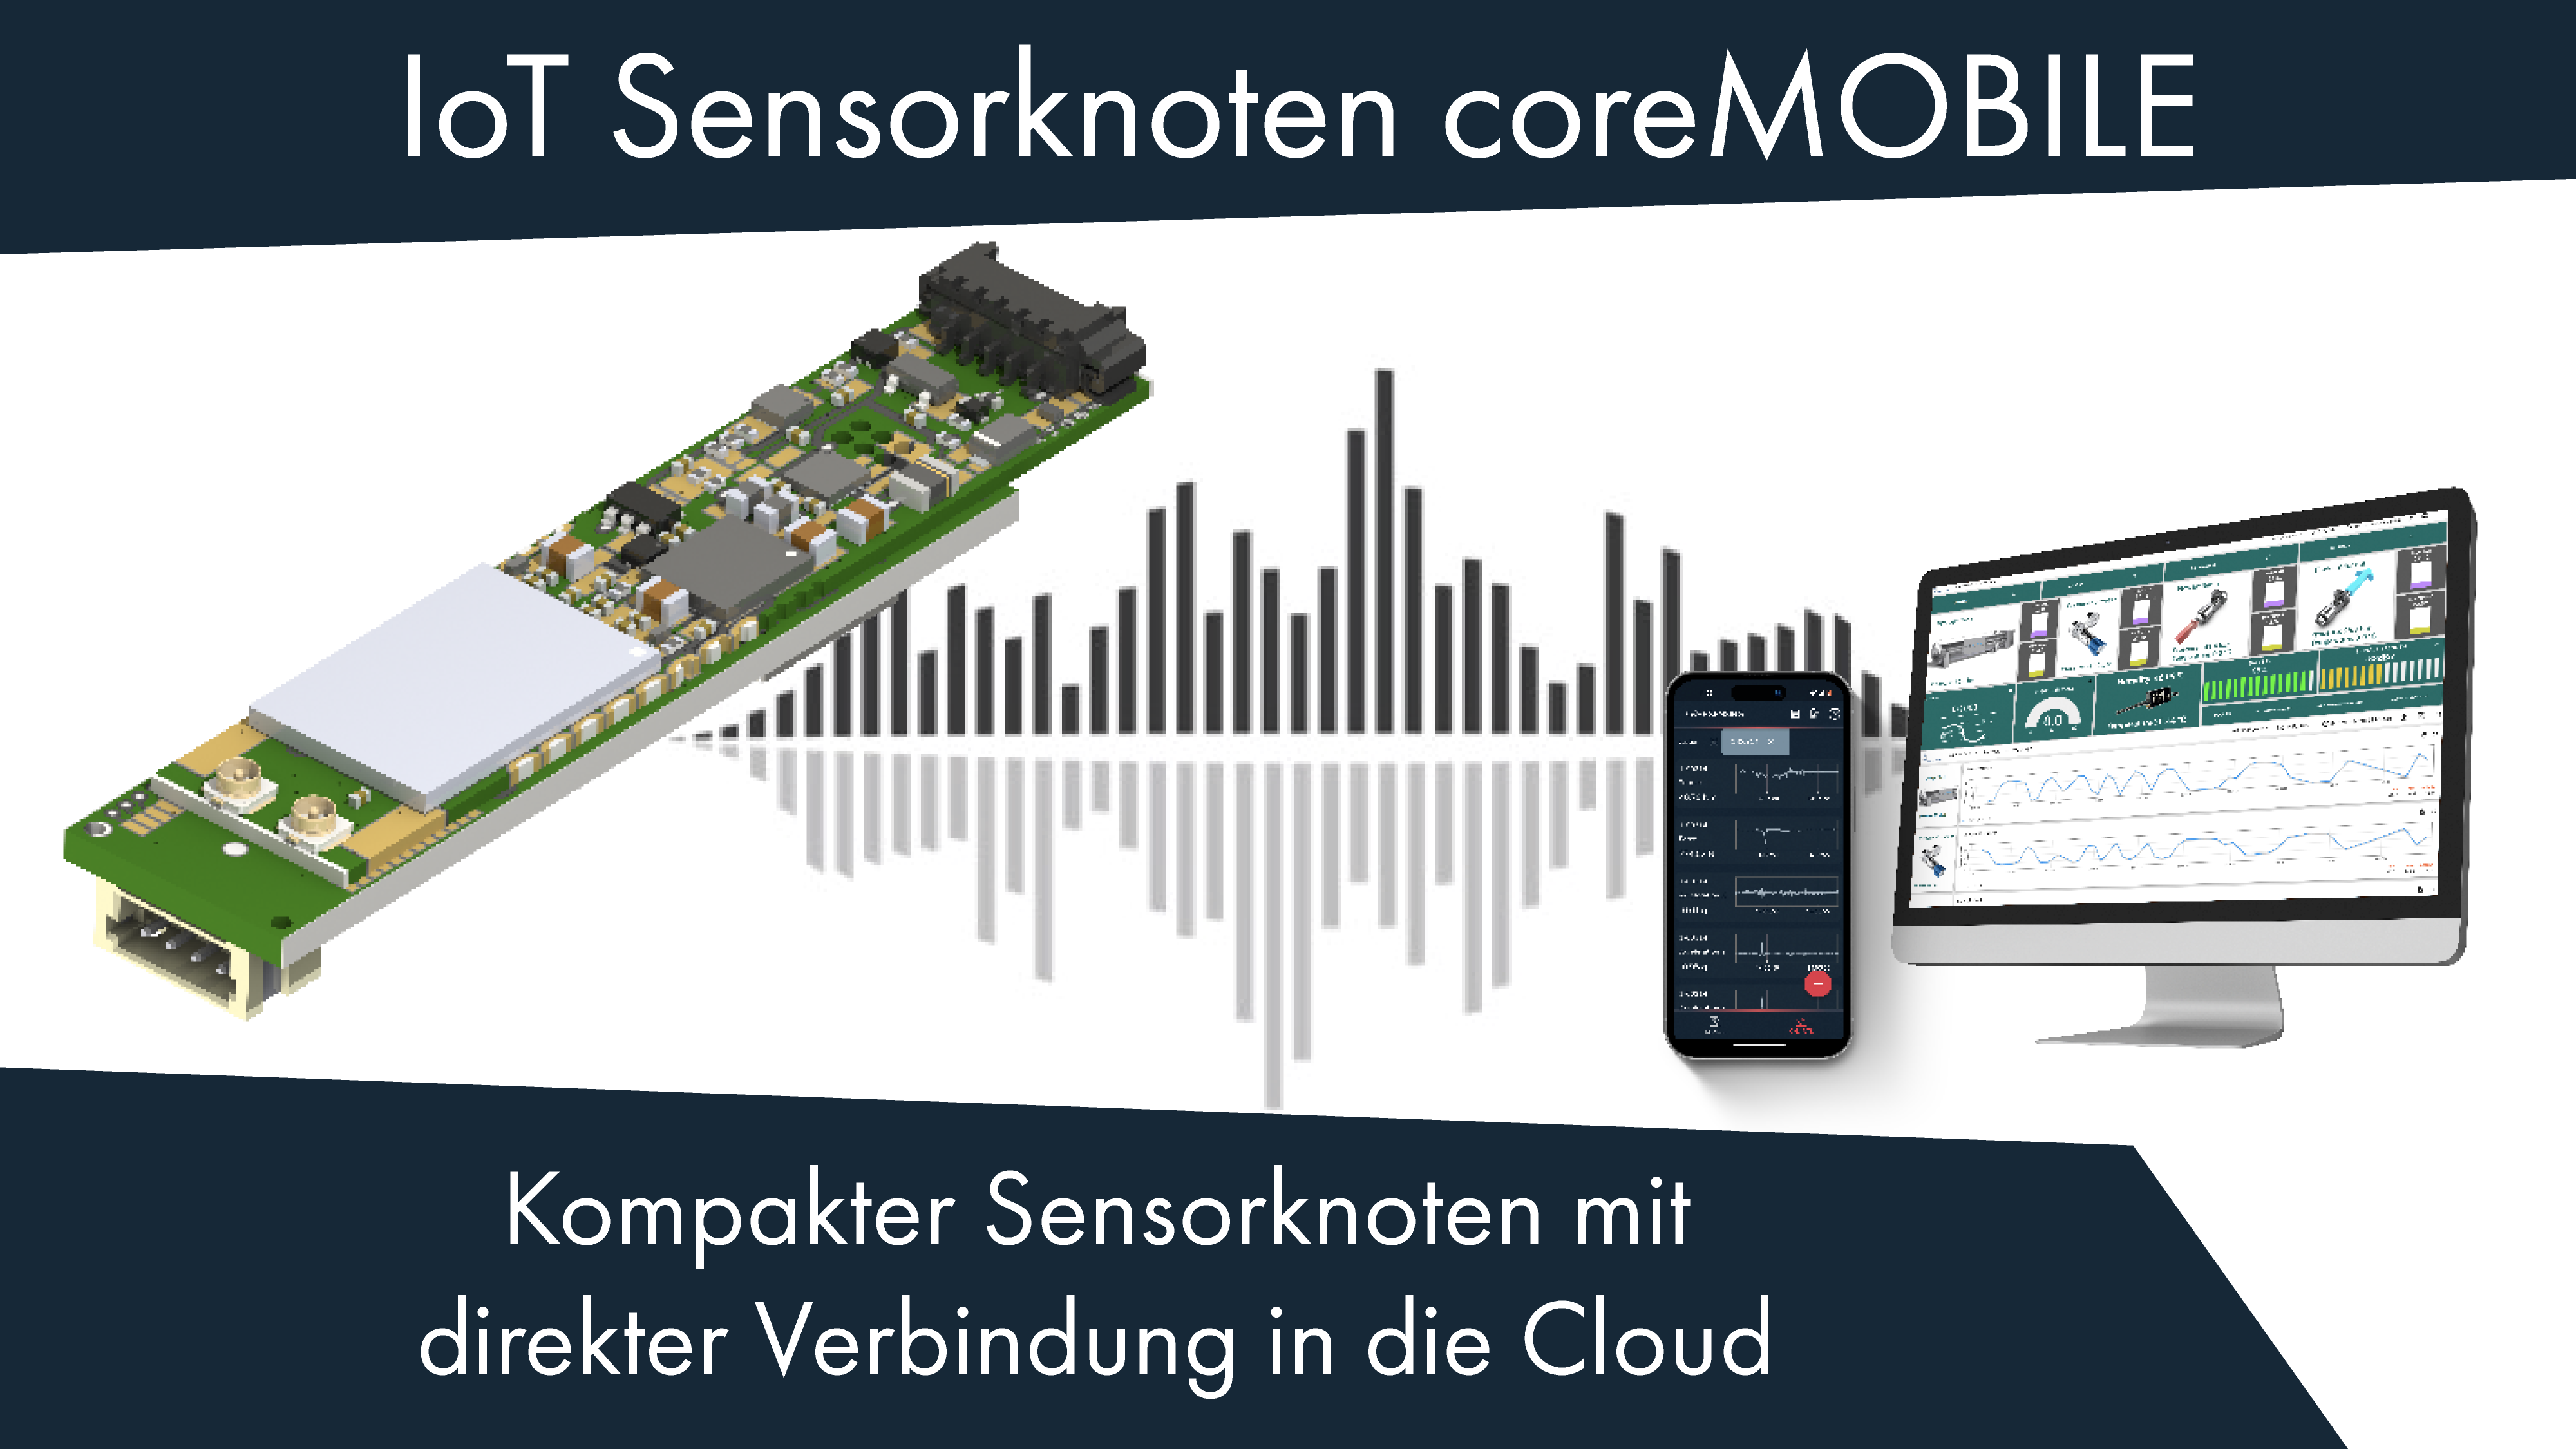 IoT sensor node coreMOBILE